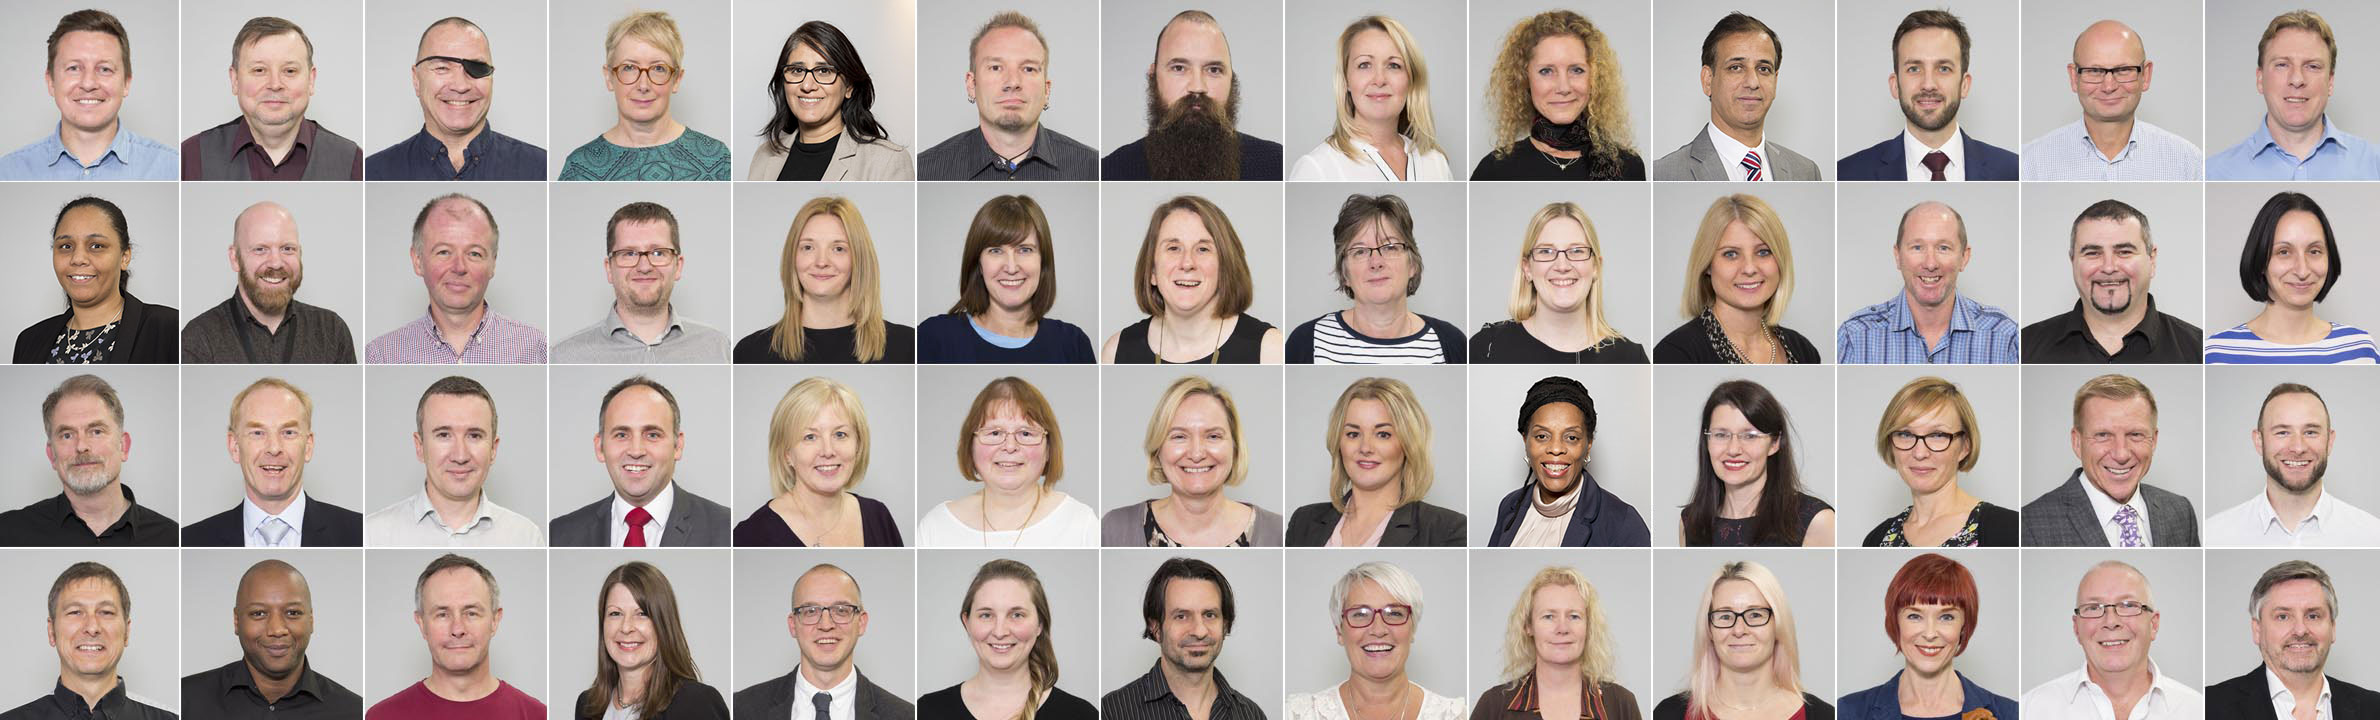 Fantastic Nottingham College 2018 Staff Portrait Montage